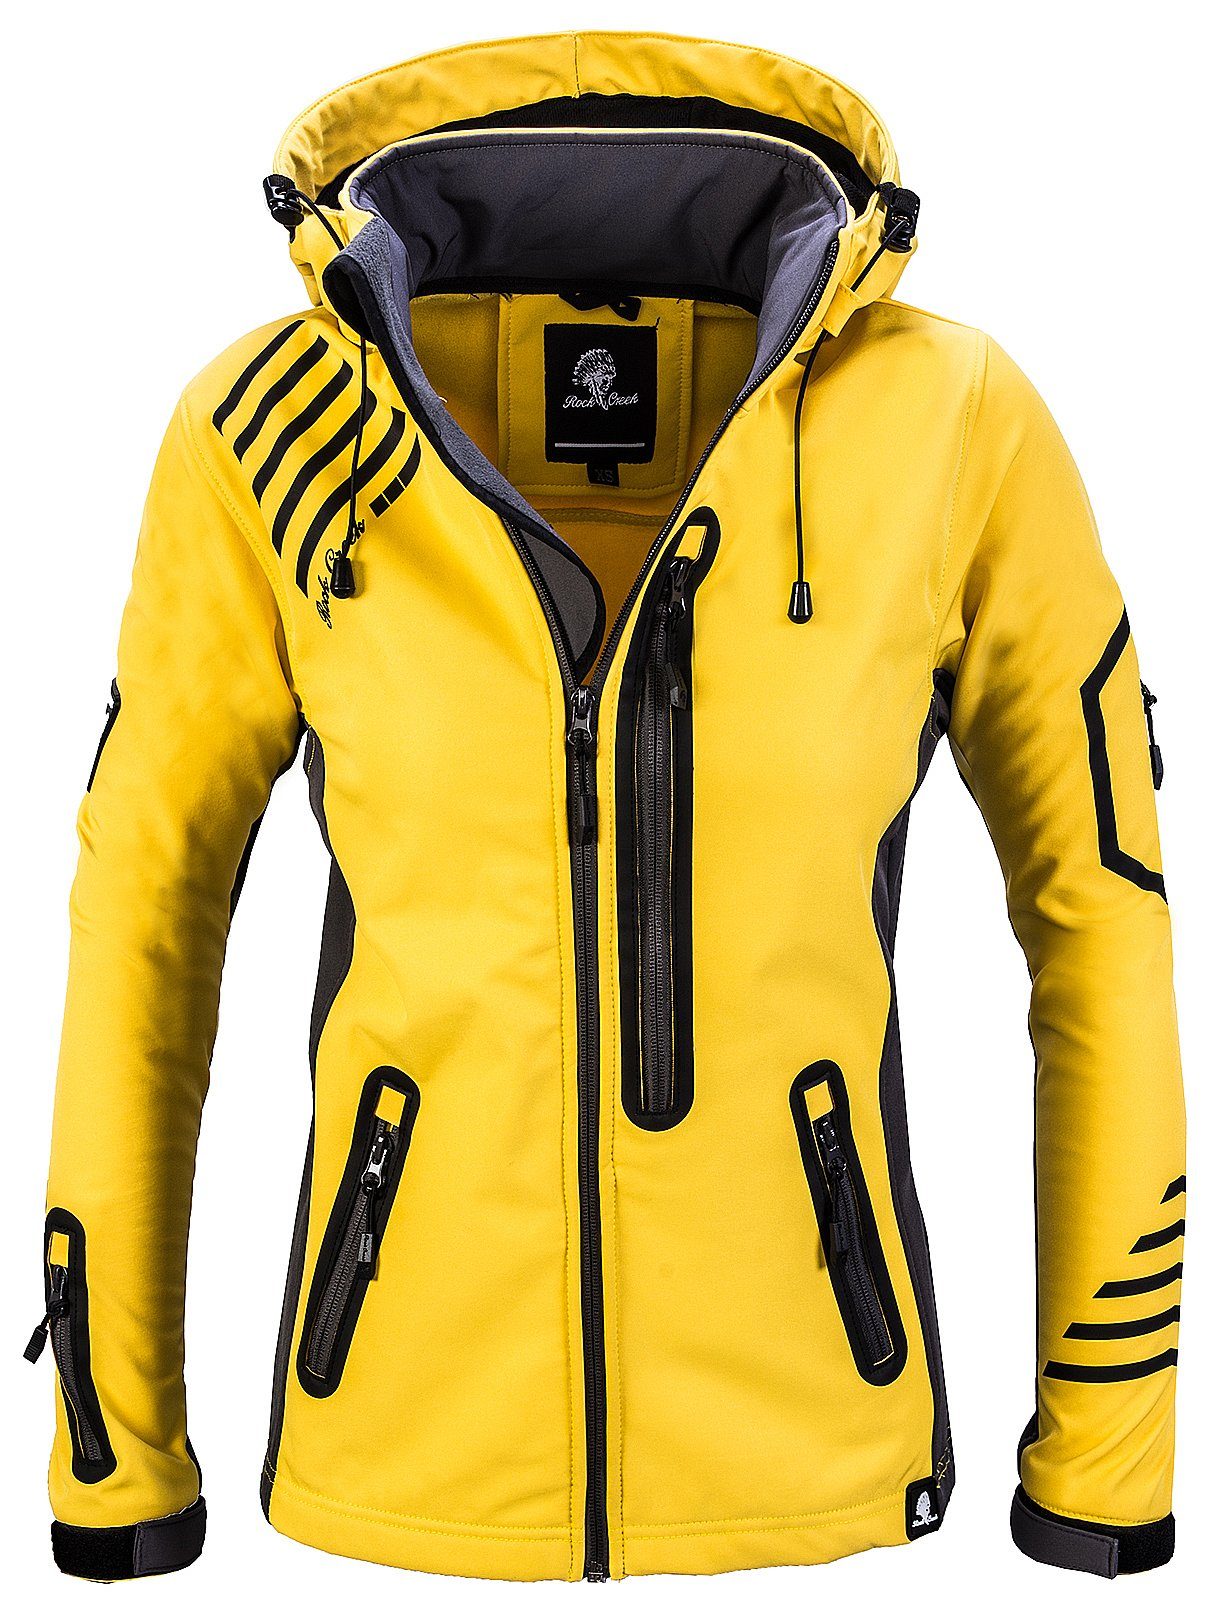 Gelbe Jacke online kaufen | OTTO